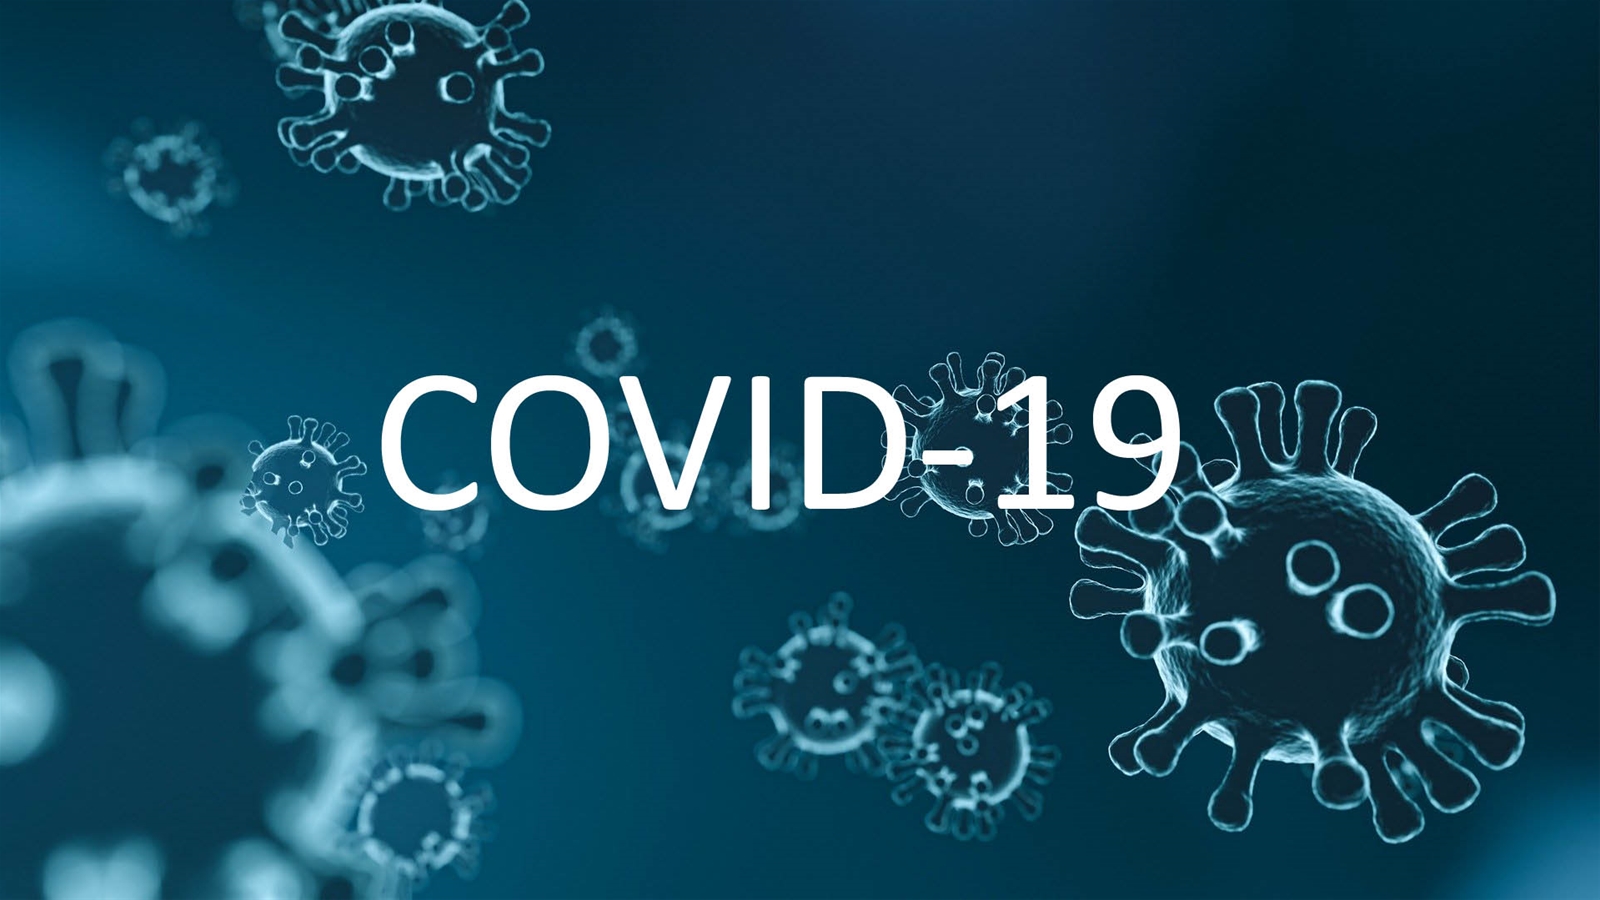 Công văn 275 của Bộ LĐ-TB&XH về việc tăng cường các giải pháp phòng, chống dịch COVID-19 cho trẻ em và bảo đảm an toàn cho trẻ em trong đại dịch.